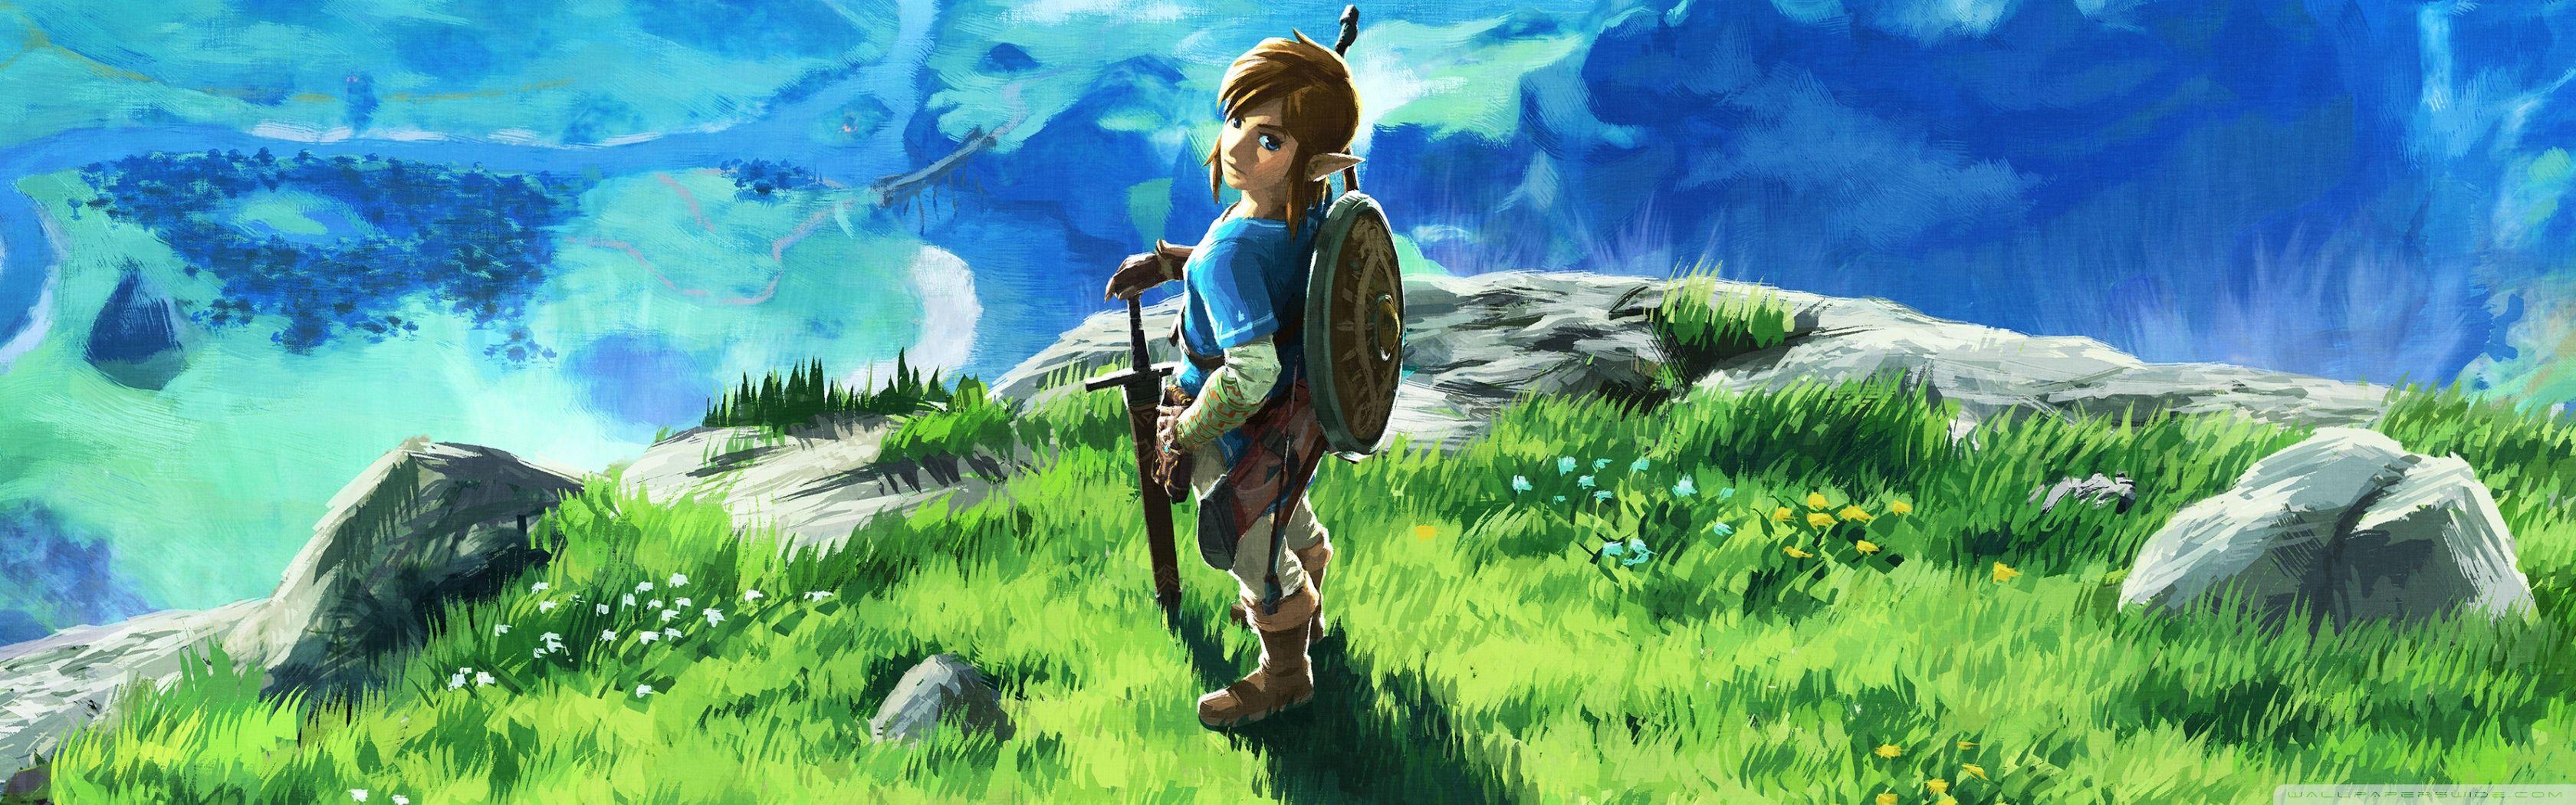 Legend of Zelda Dual Screen Wallpapers - Top Free Legend of Zelda Dual